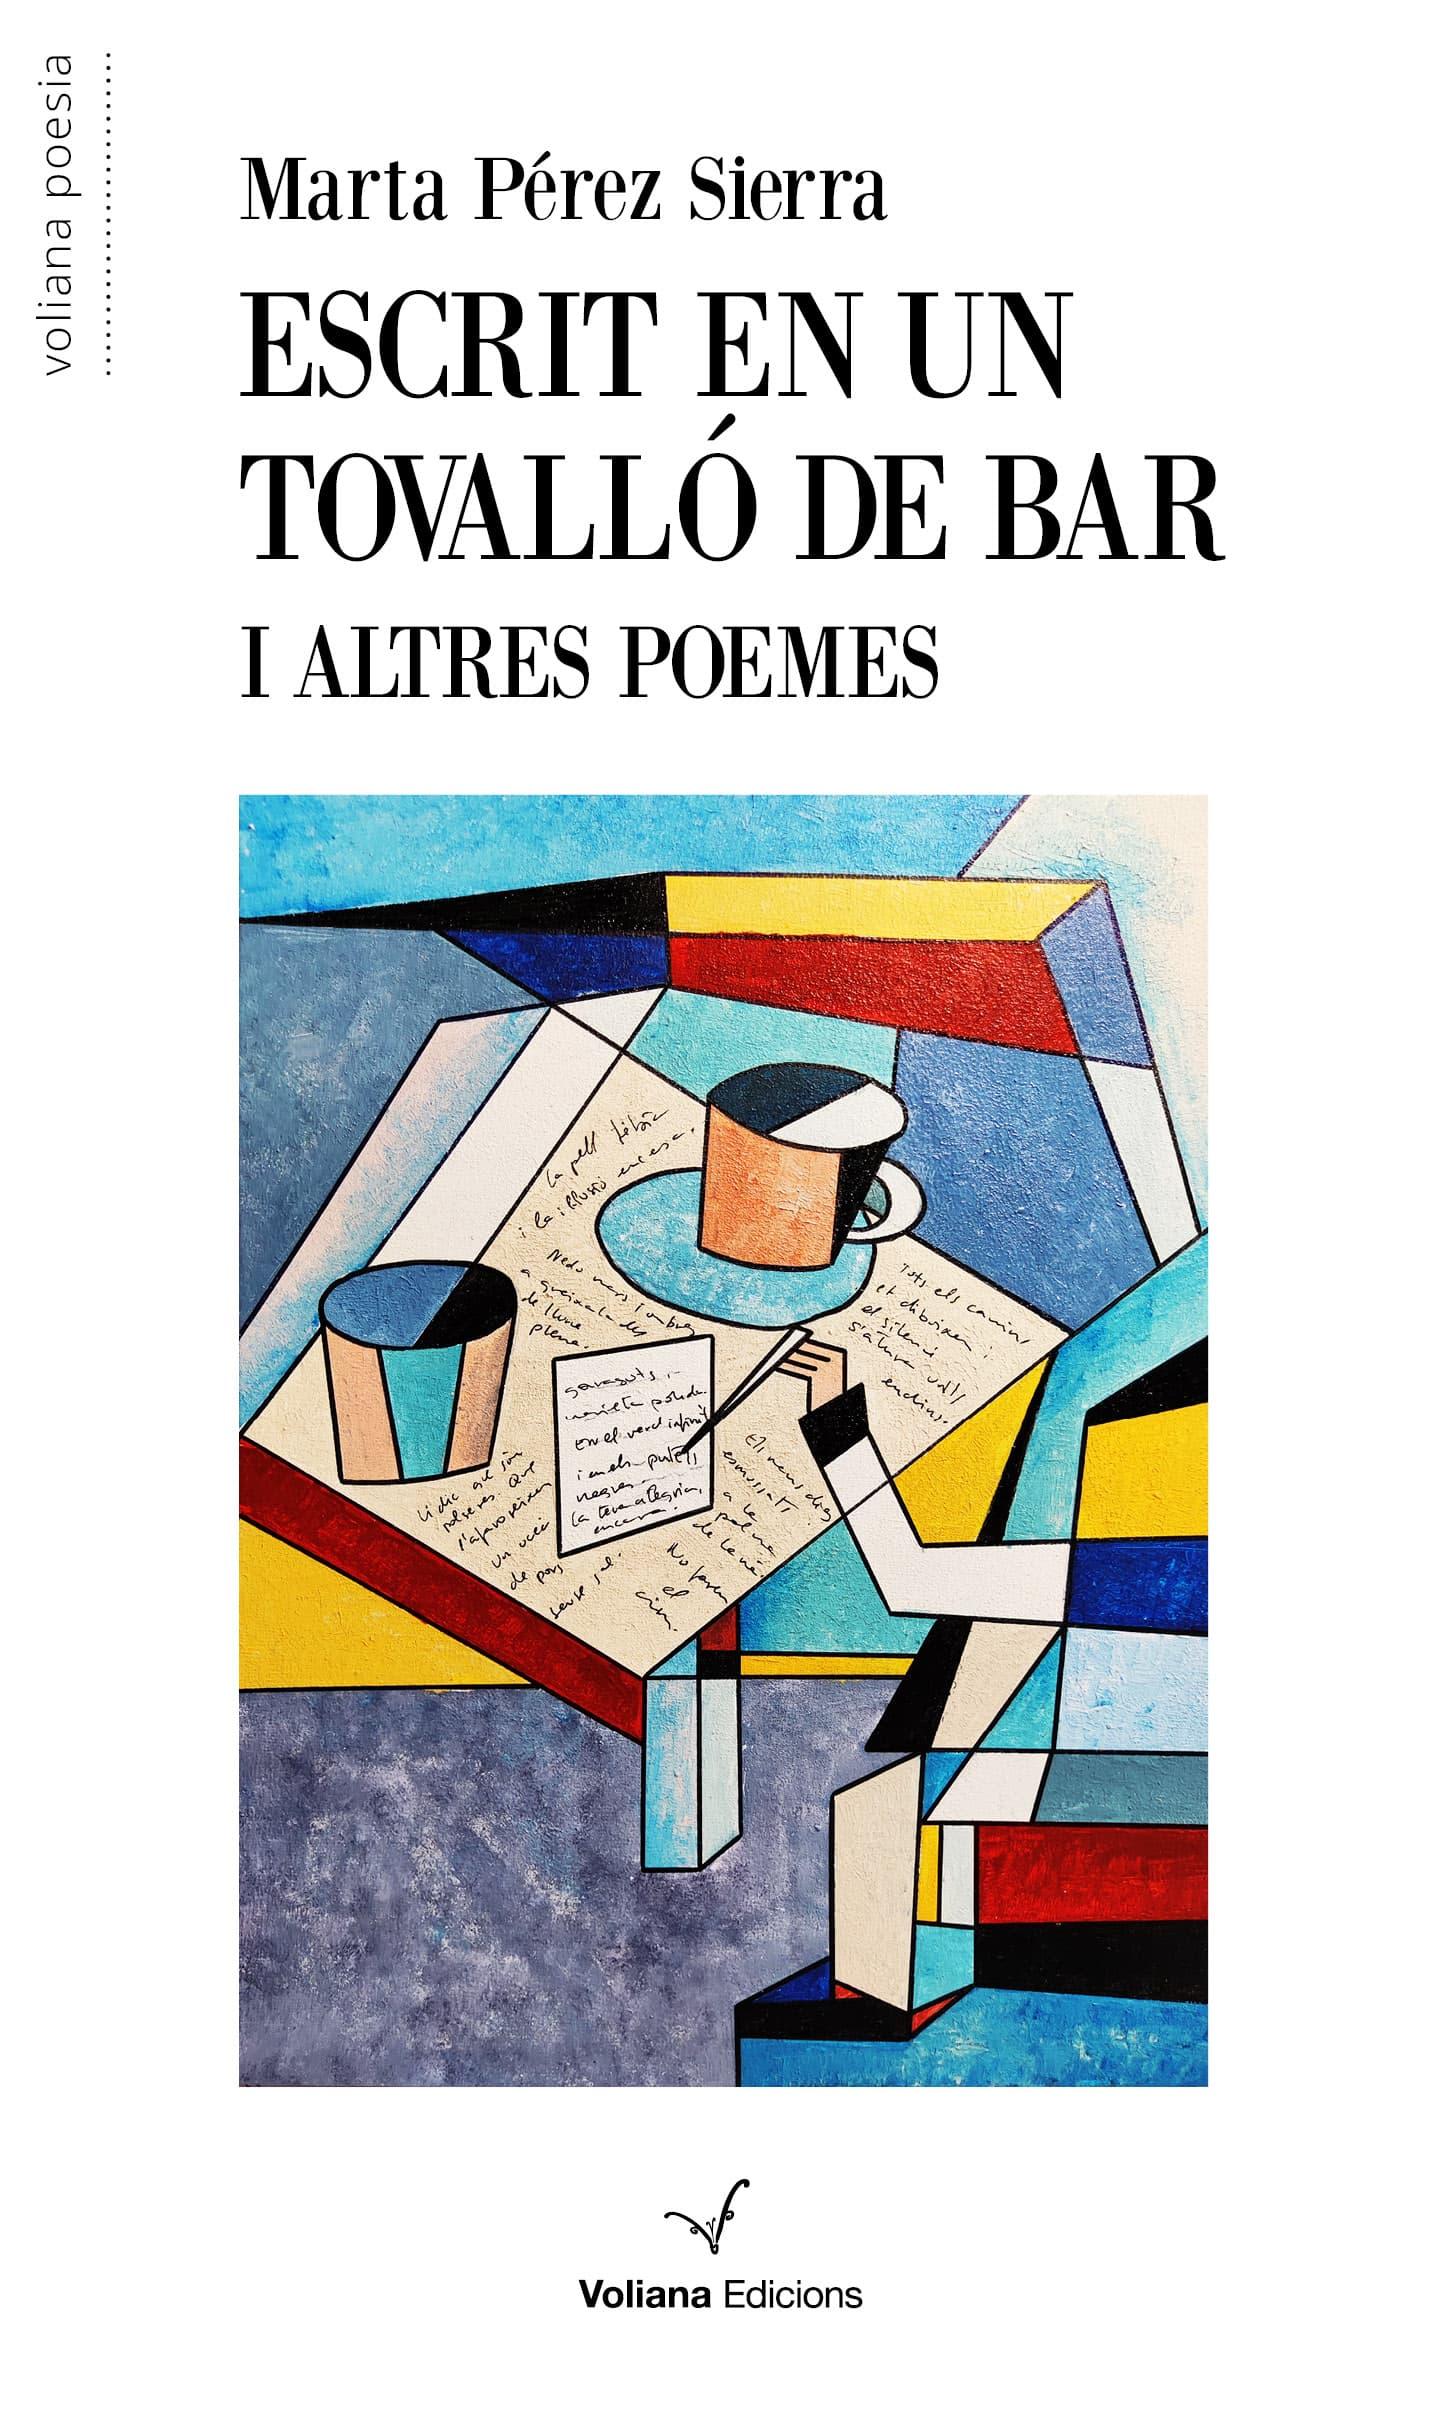 Presentació del llibre Lluny, aquí mateix de Lluís Vila i del llibre Escrit en un tovalló de bar i altres poemes de Marta Pérez Sierra.